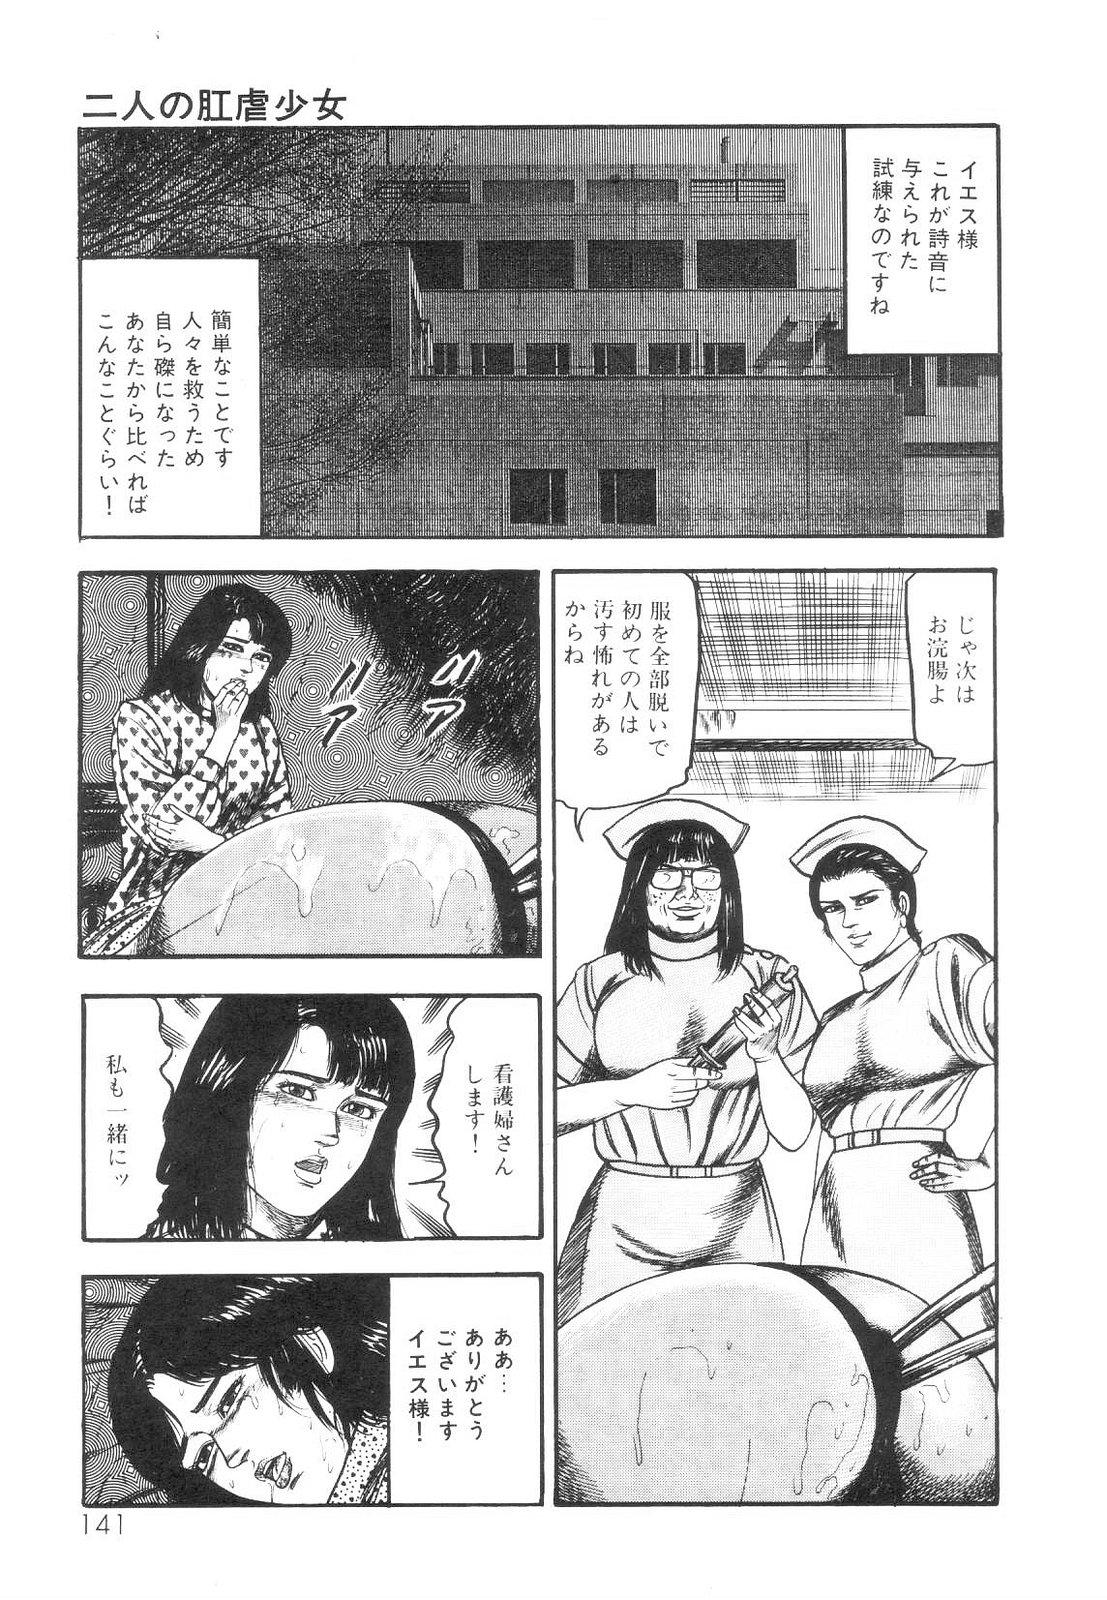 Shiro no Mokushiroku Vol. 1 - Sei Shojo Shion no Shou 141